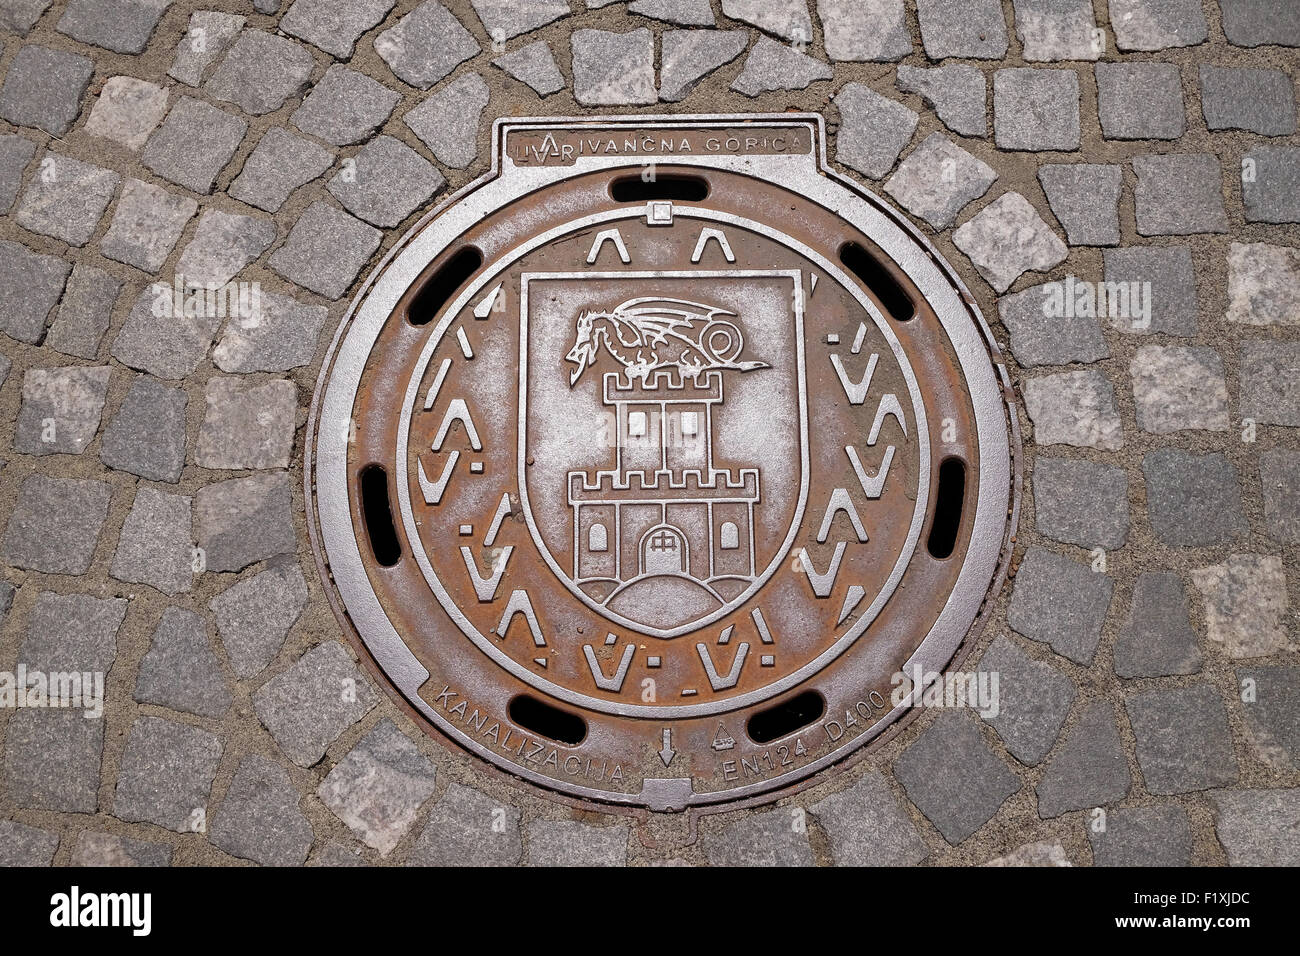 Couvercle avec les armoiries de la ville de Ljubljana, Slovénie, le 30 juin, 2015 Banque D'Images